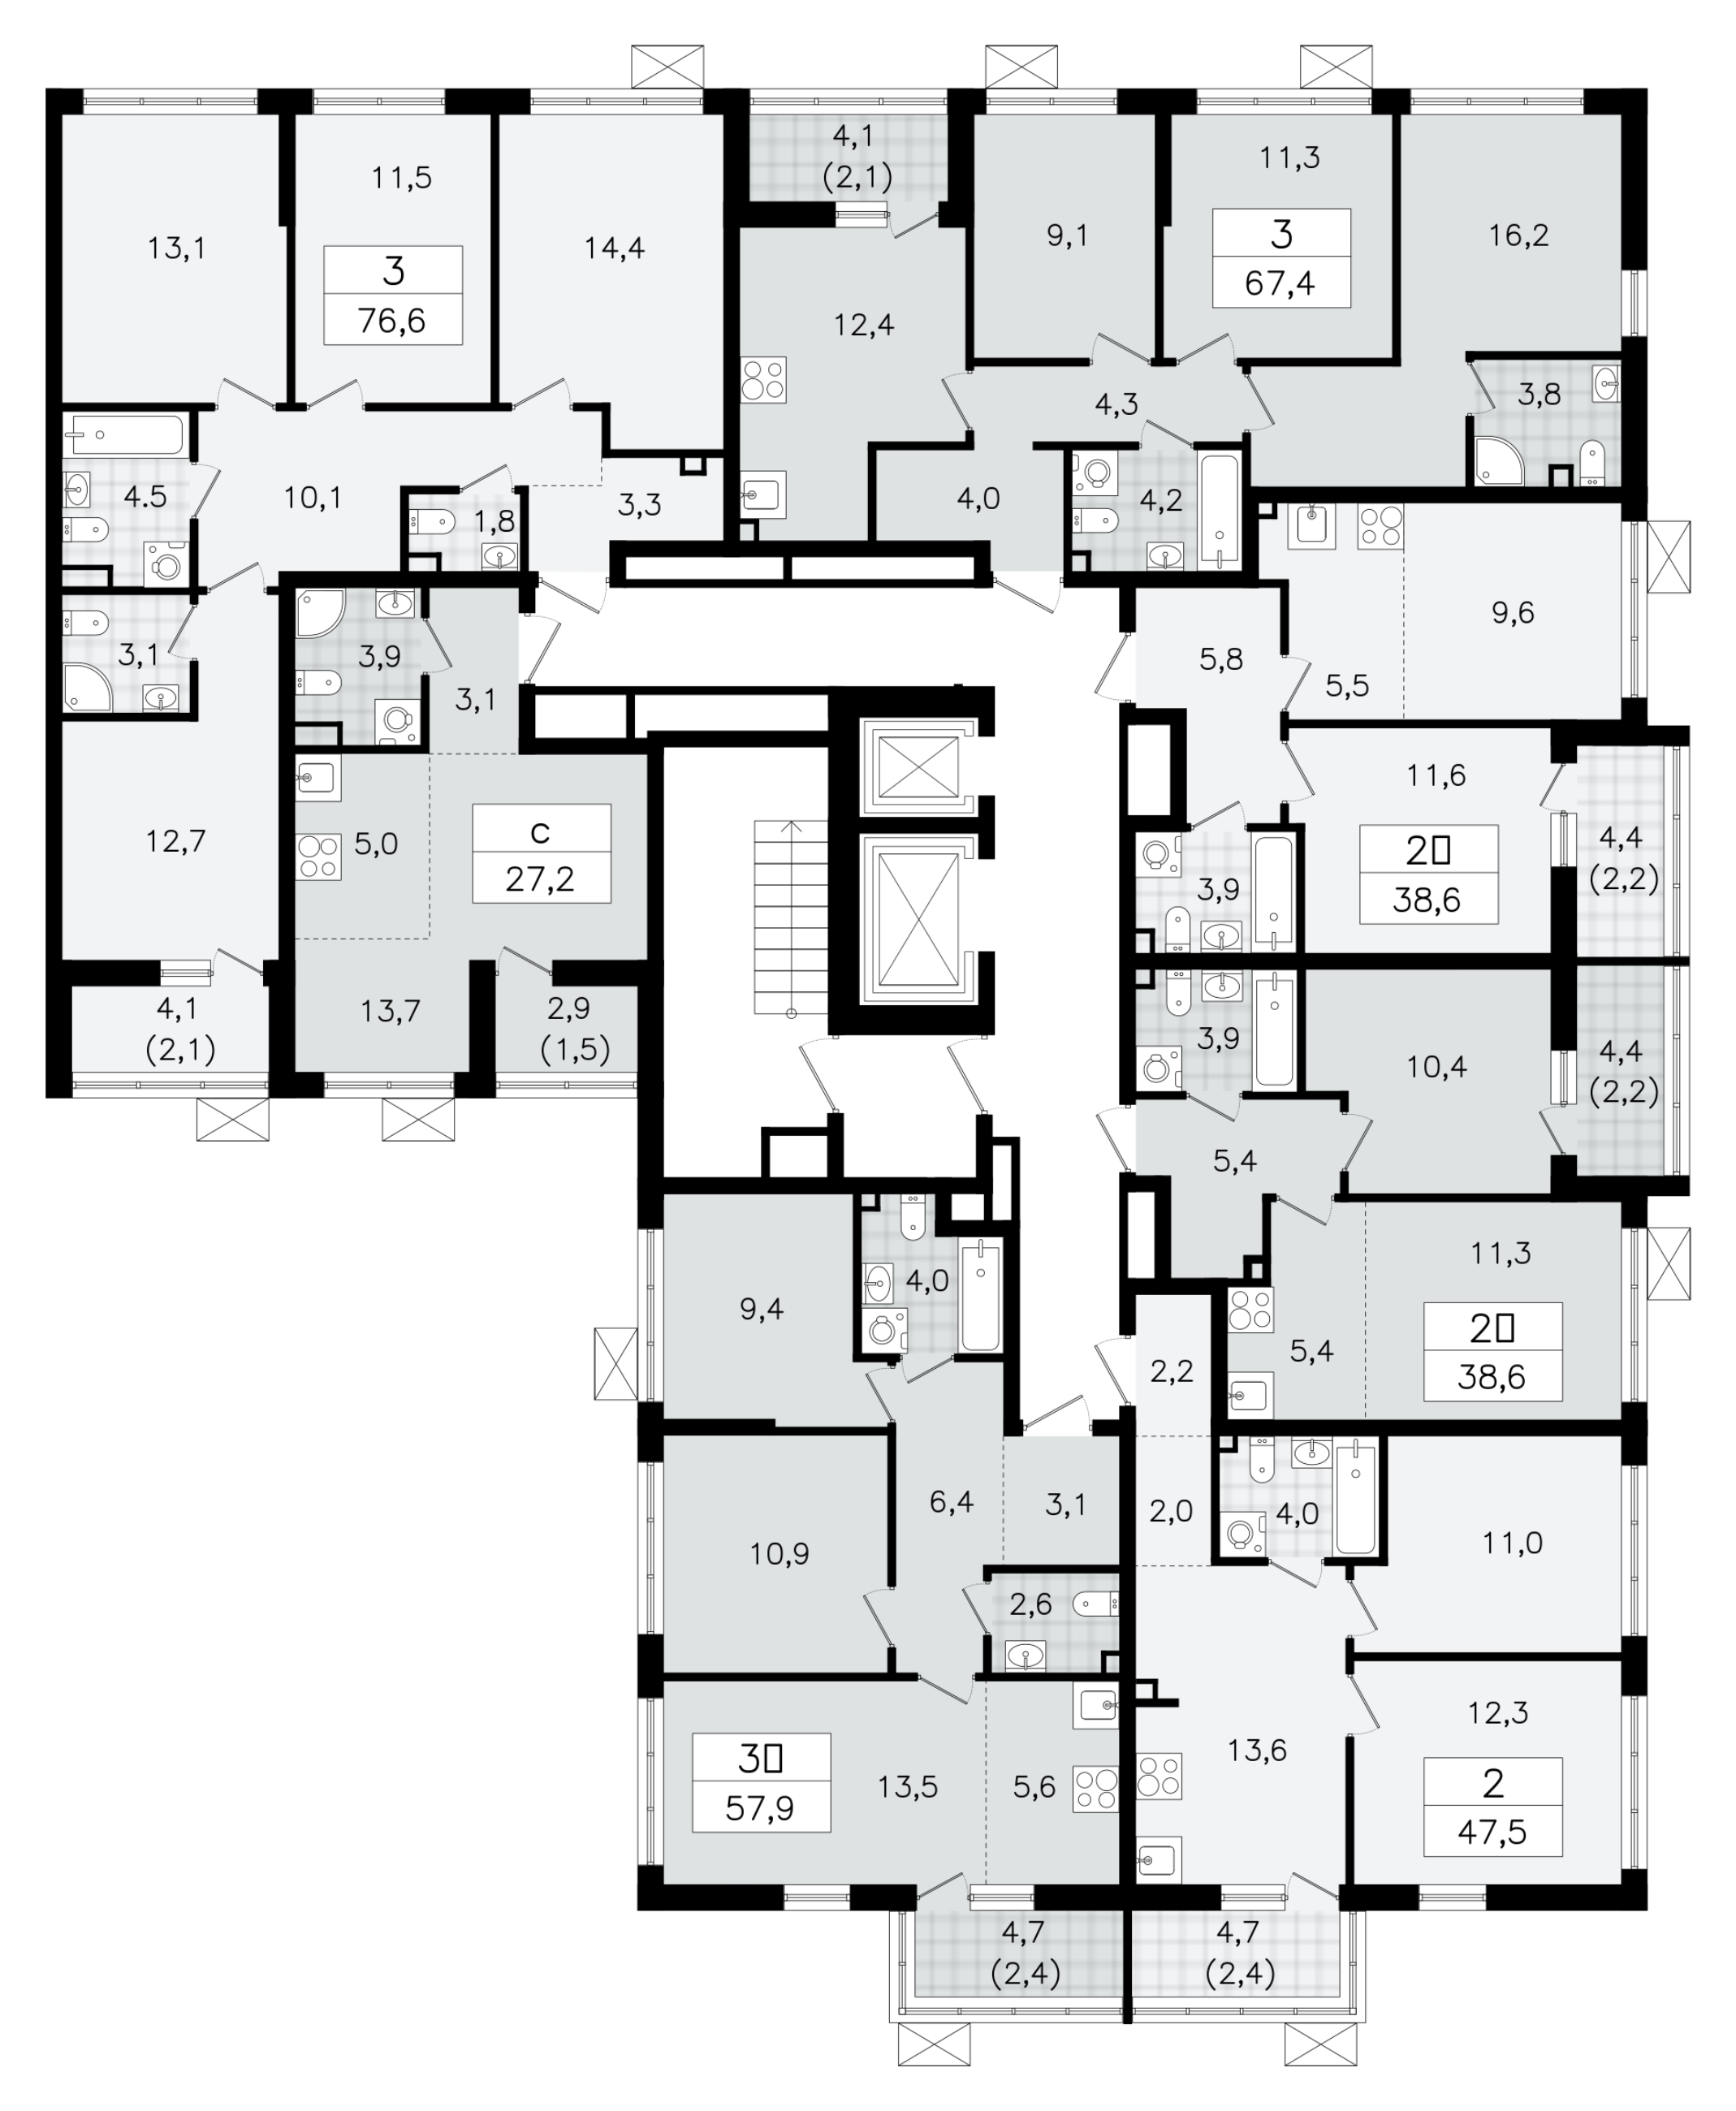 2-комнатная (Евро) квартира, 38.6 м² в ЖК "А101 Всеволожск" - планировка этажа